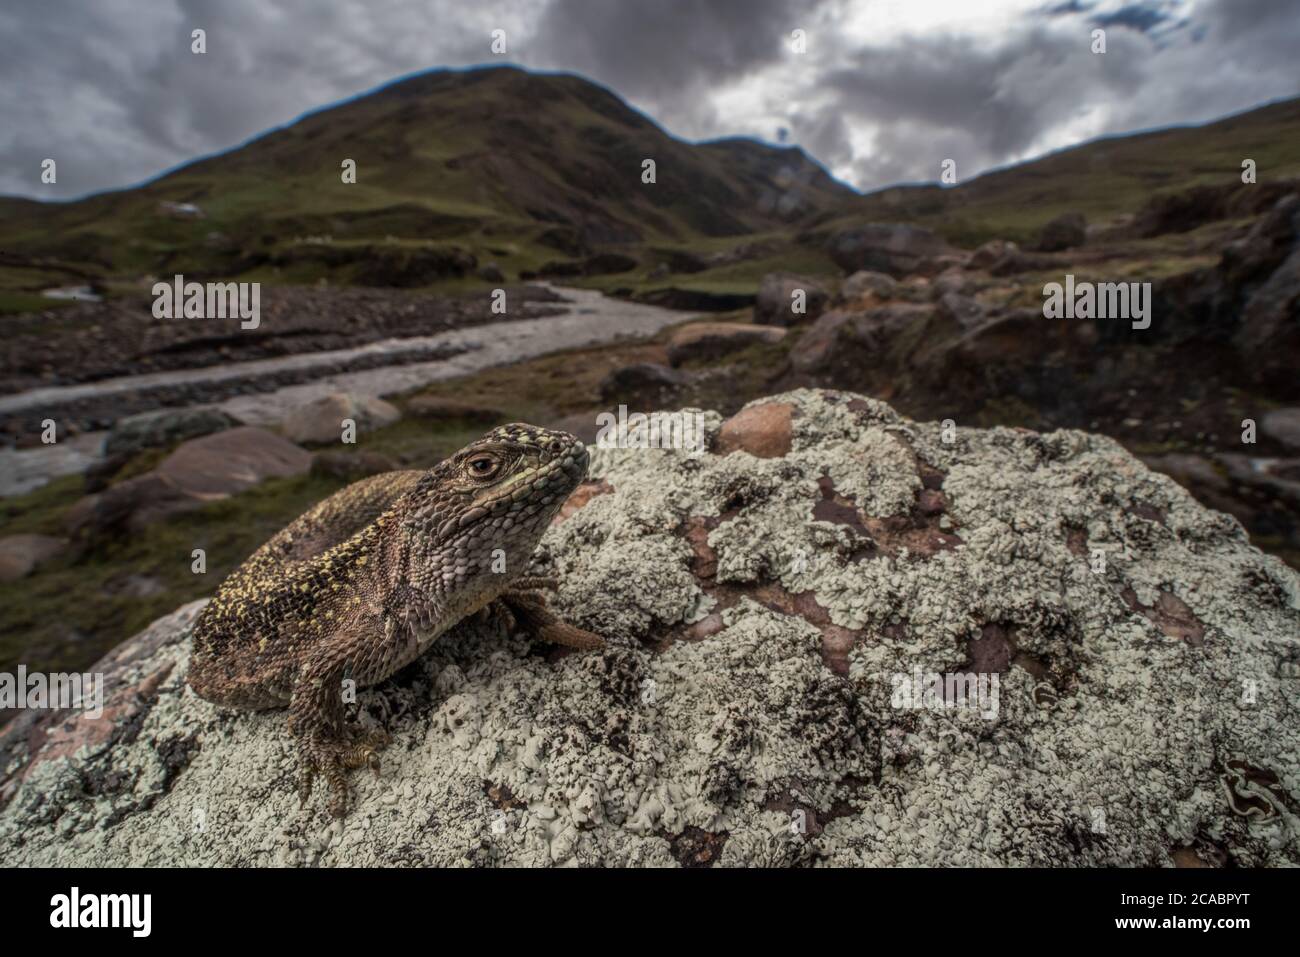 Un lagarto Liolaemus se alza sobre una piedra en un día frío en lo alto de la cordillera de los Andes, donde se encuentran estos lagartos. Foto de stock